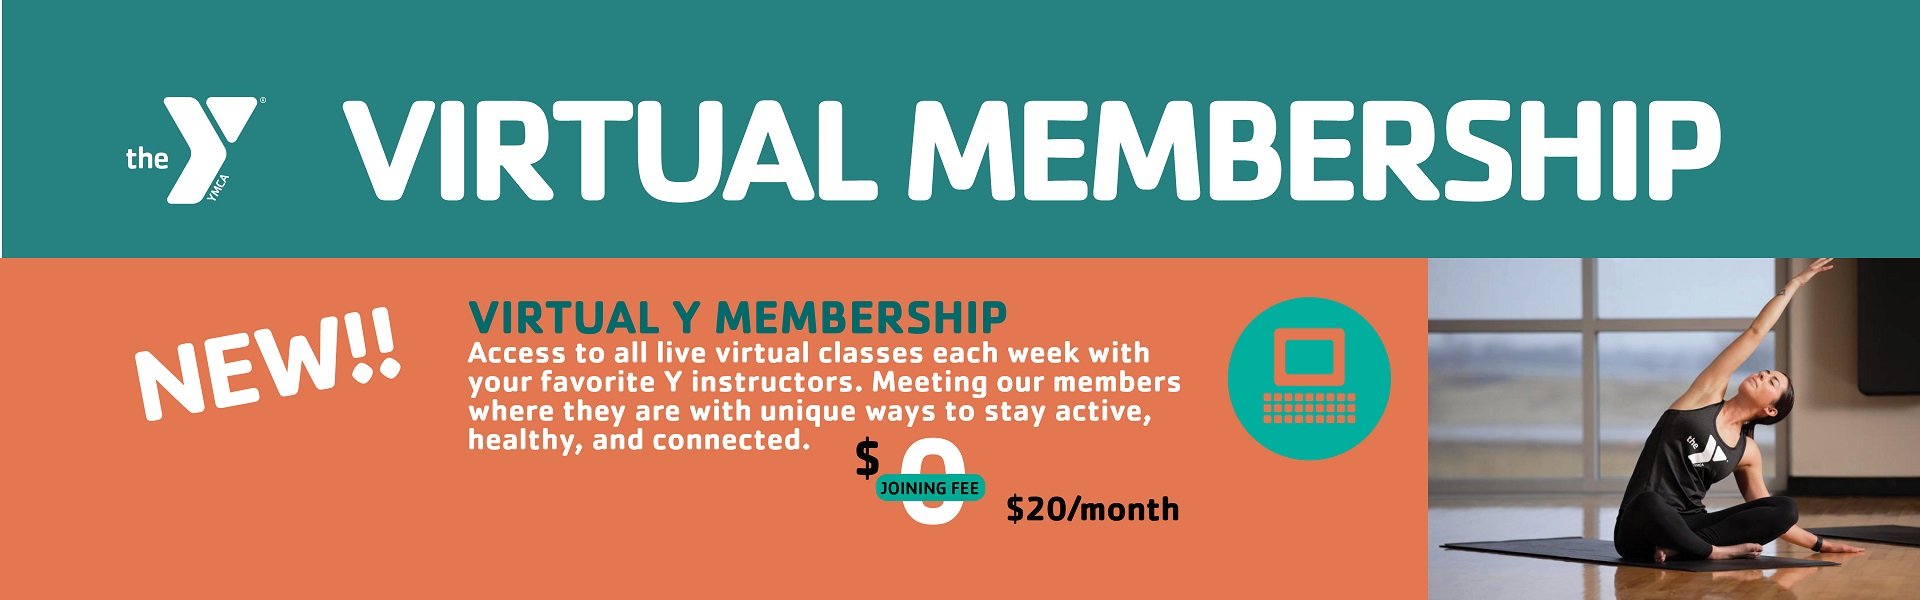 Virtual Membership